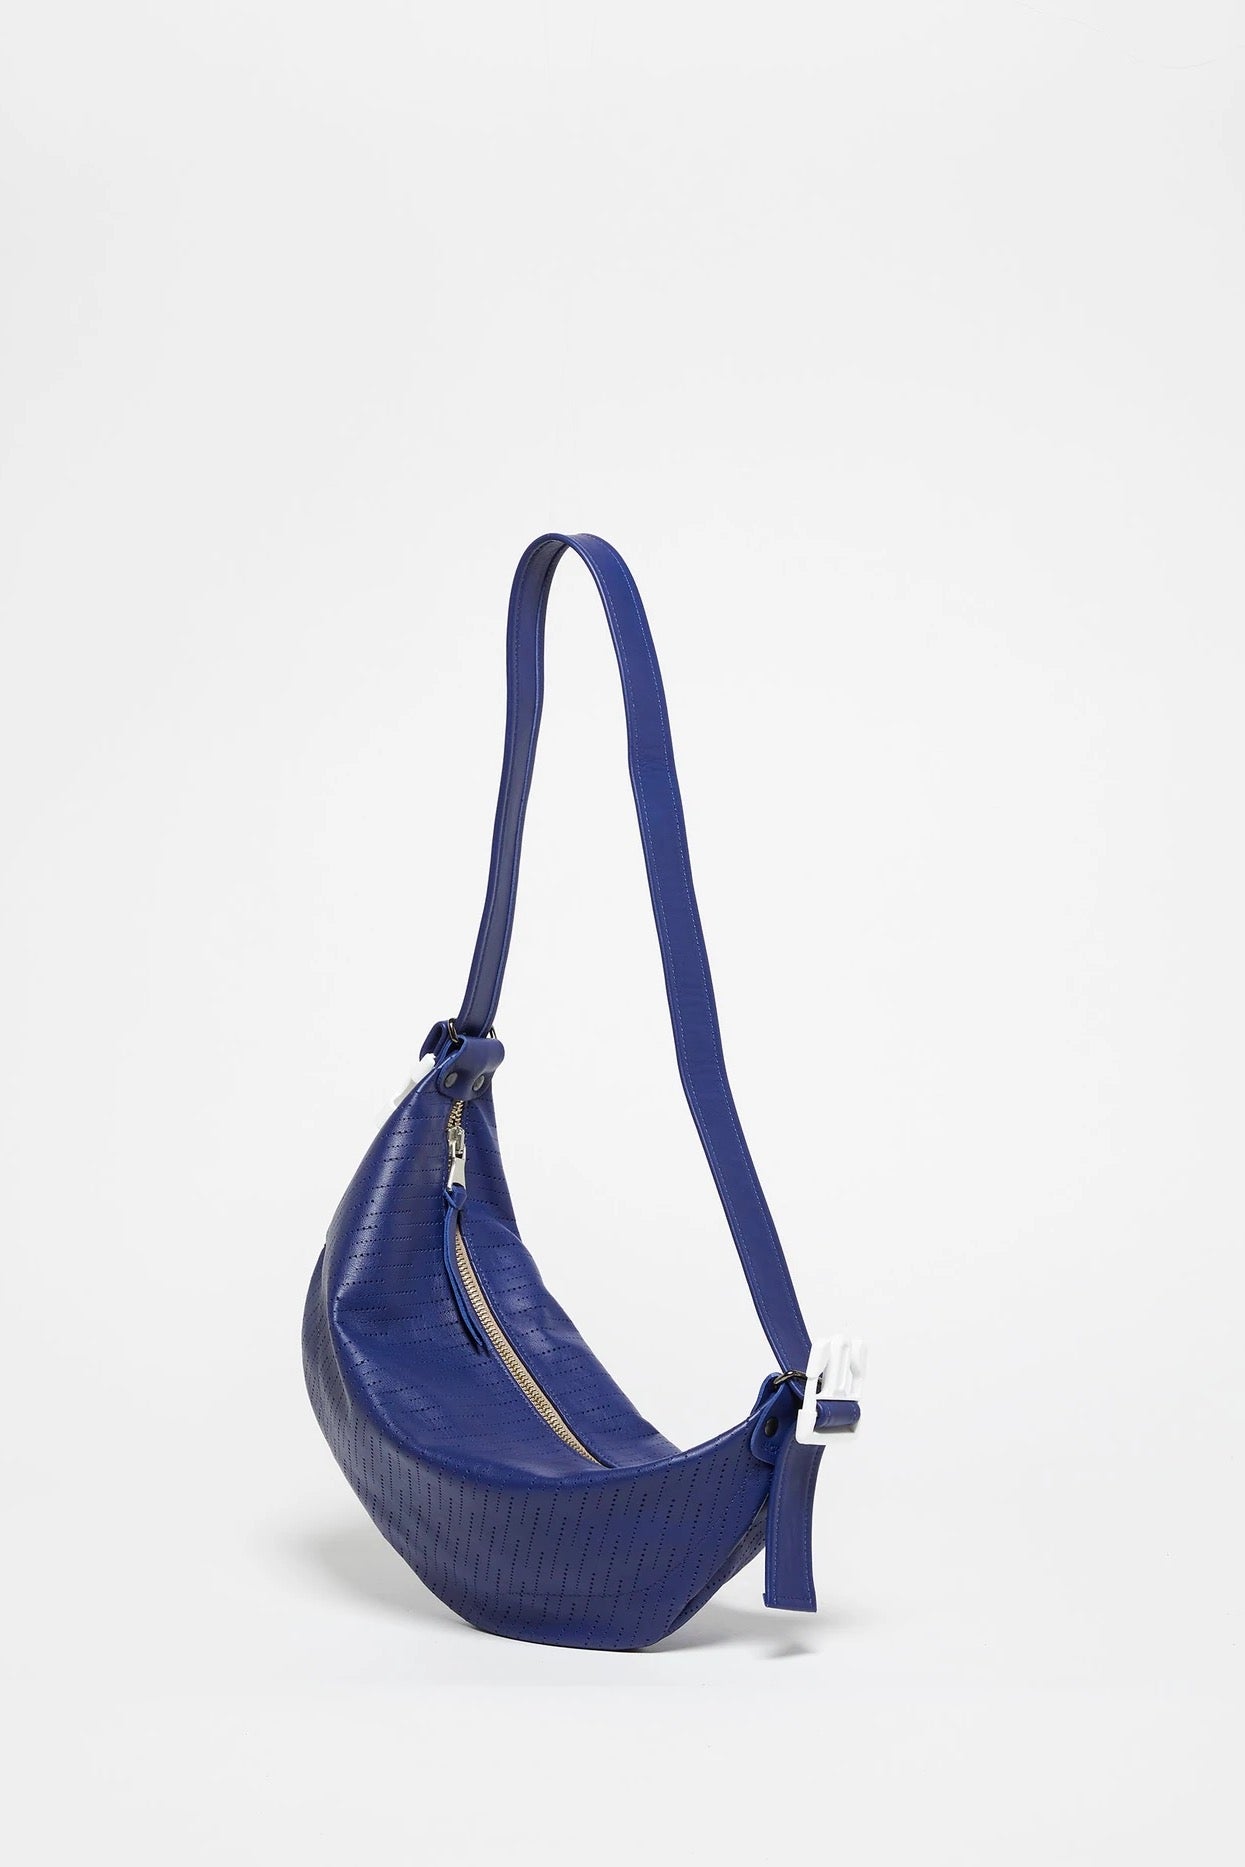 Jack Gomme- Elle Moon Bag: Natical Blue